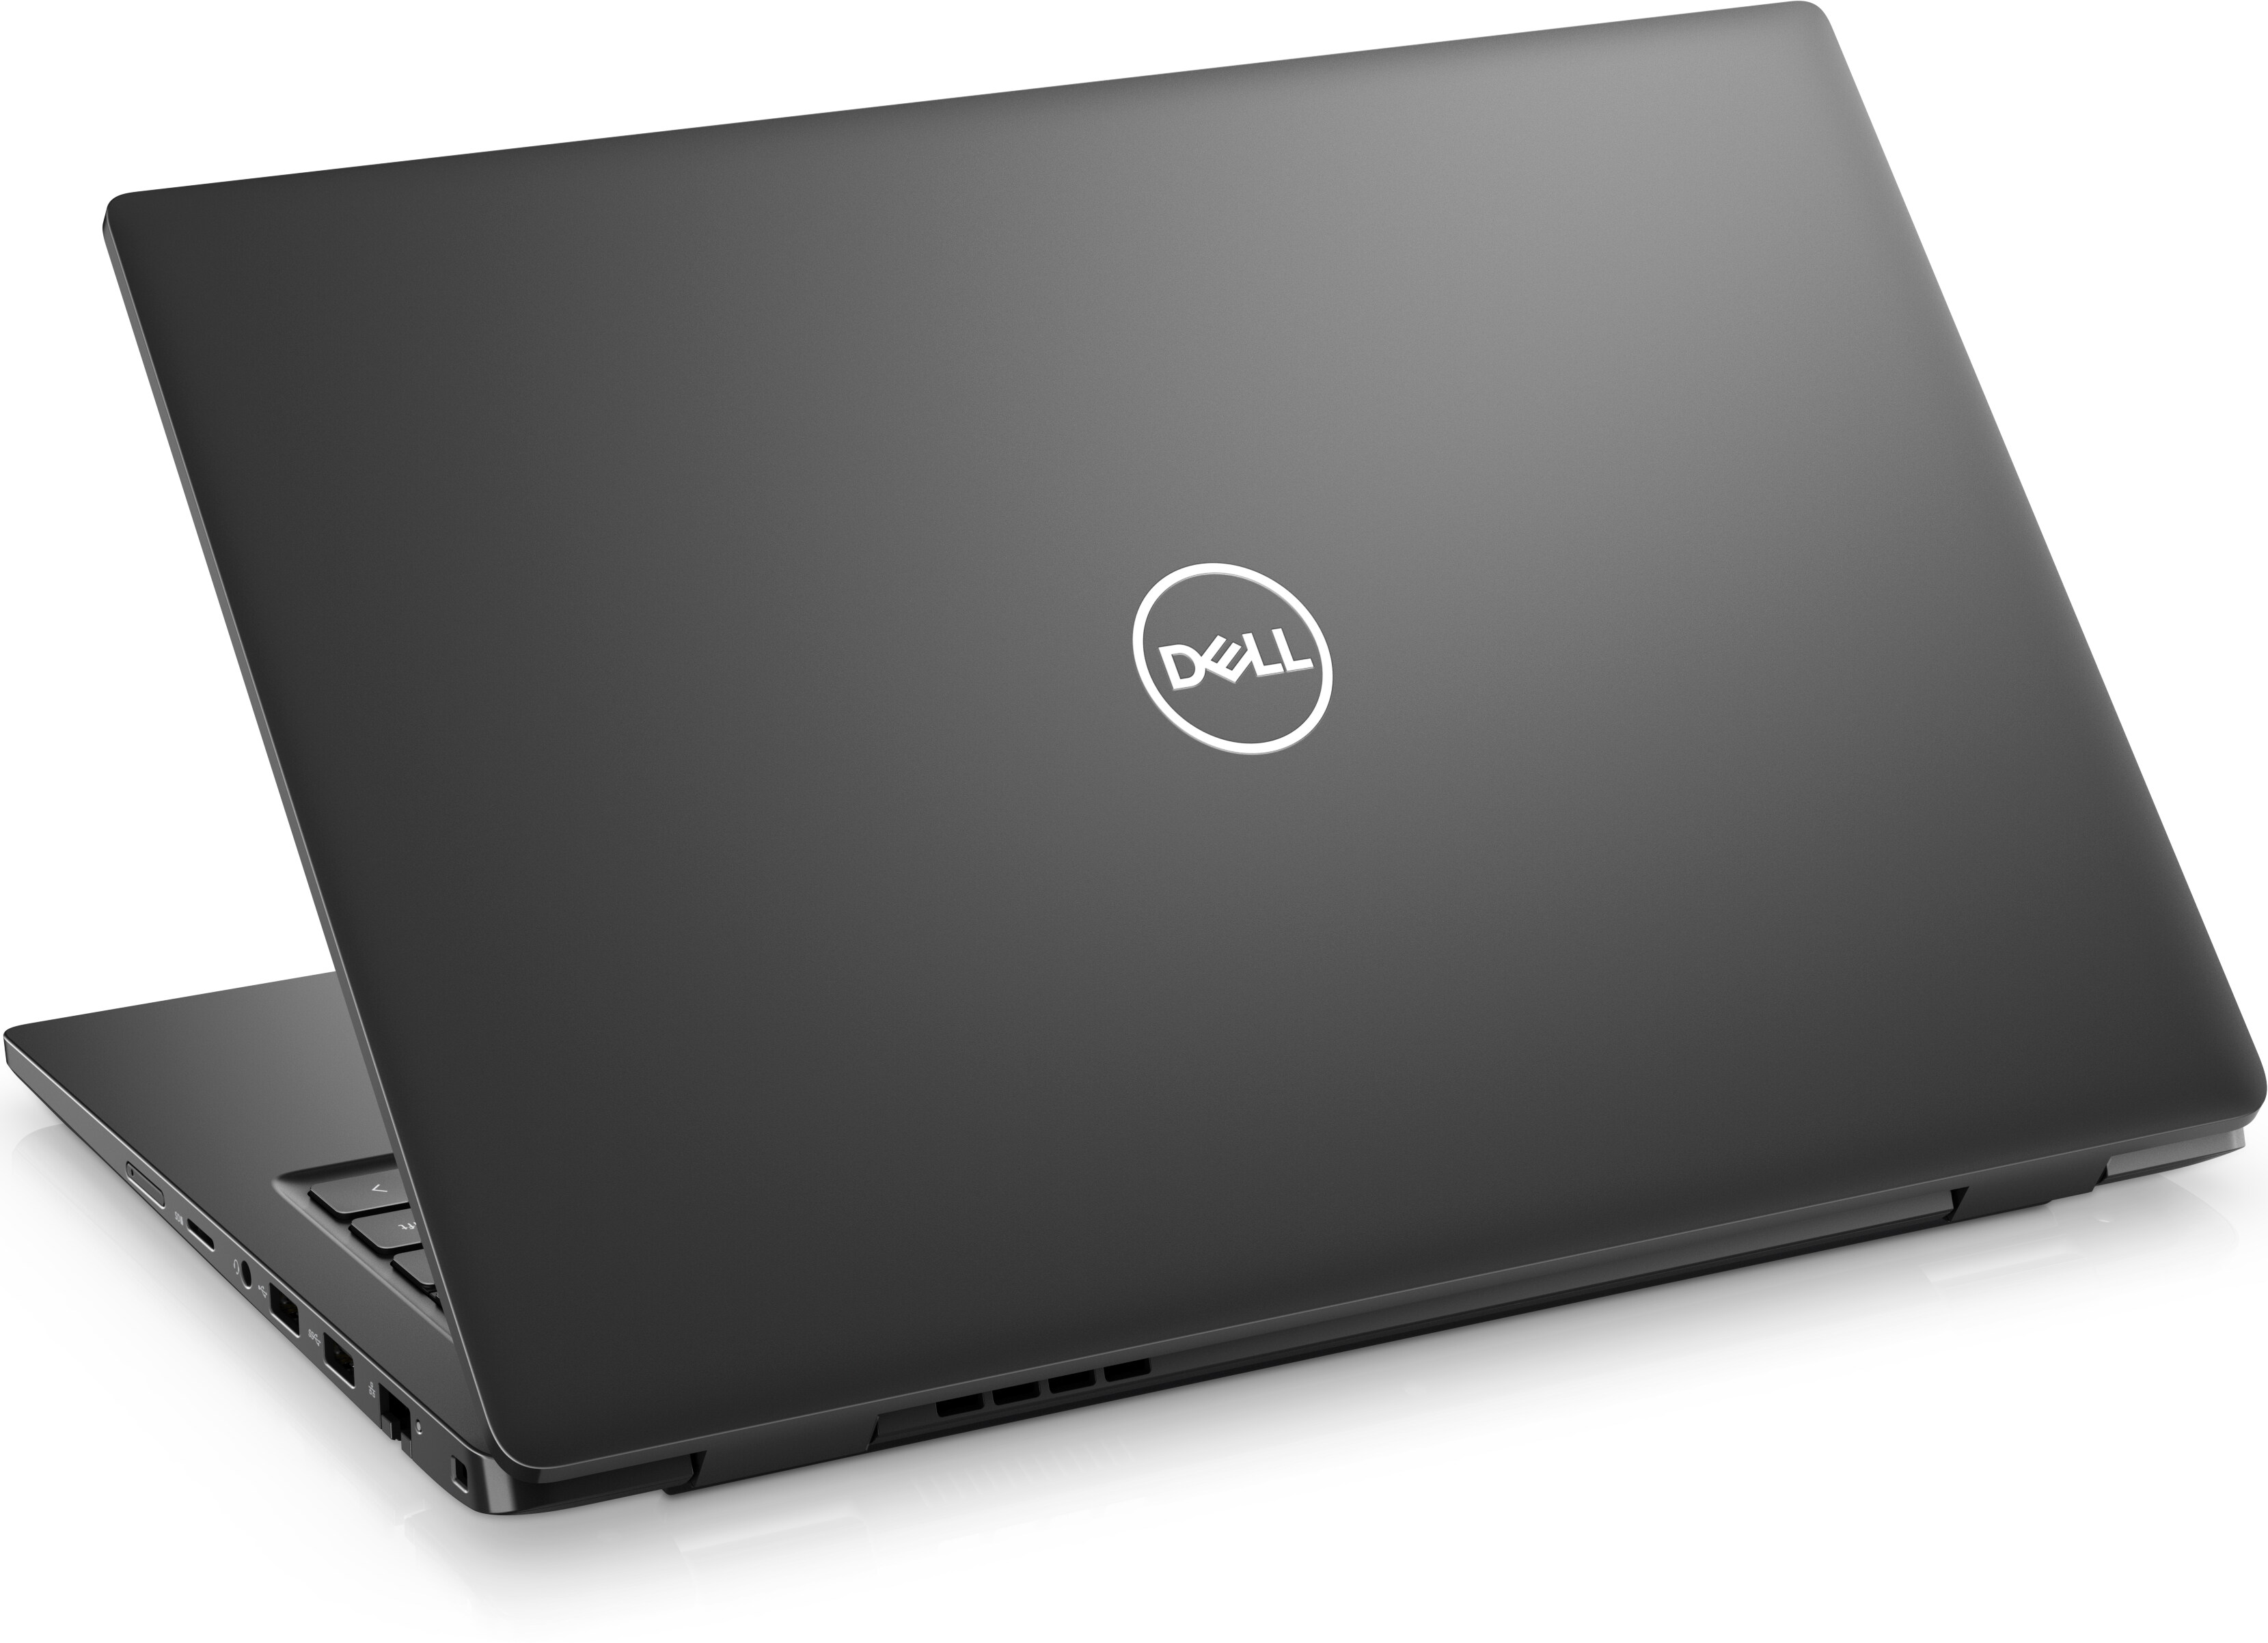 woonadres Ingrijpen Kwade trouw Dell Latitude 3420 14 Inch Laptop | Dell USA